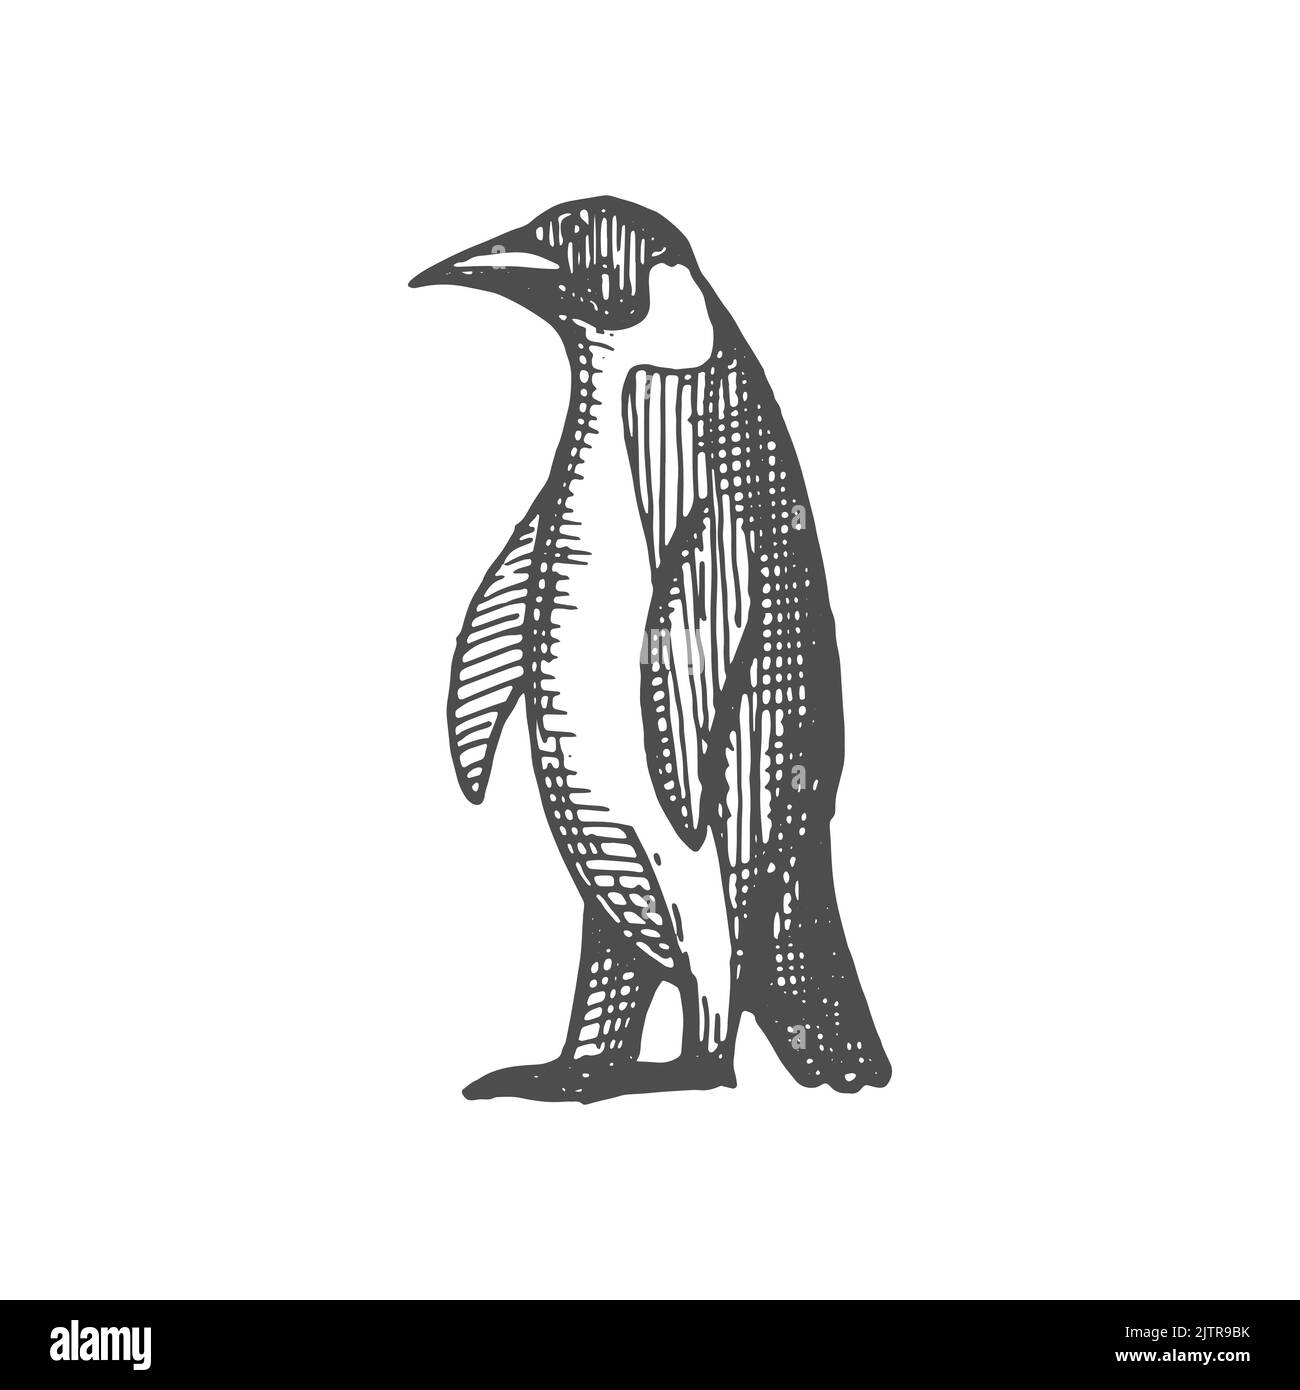 Emperor Pinguin isoliert monochrome Skizze Symbol. Vektor große flugunscheinende Seevögel der südlichen Hemisphäre, mit Flügeln Flossen zum Schwimmen unter Wasser. Königspinguin Tier, atlantische Gentoo Kreatur Stock Vektor